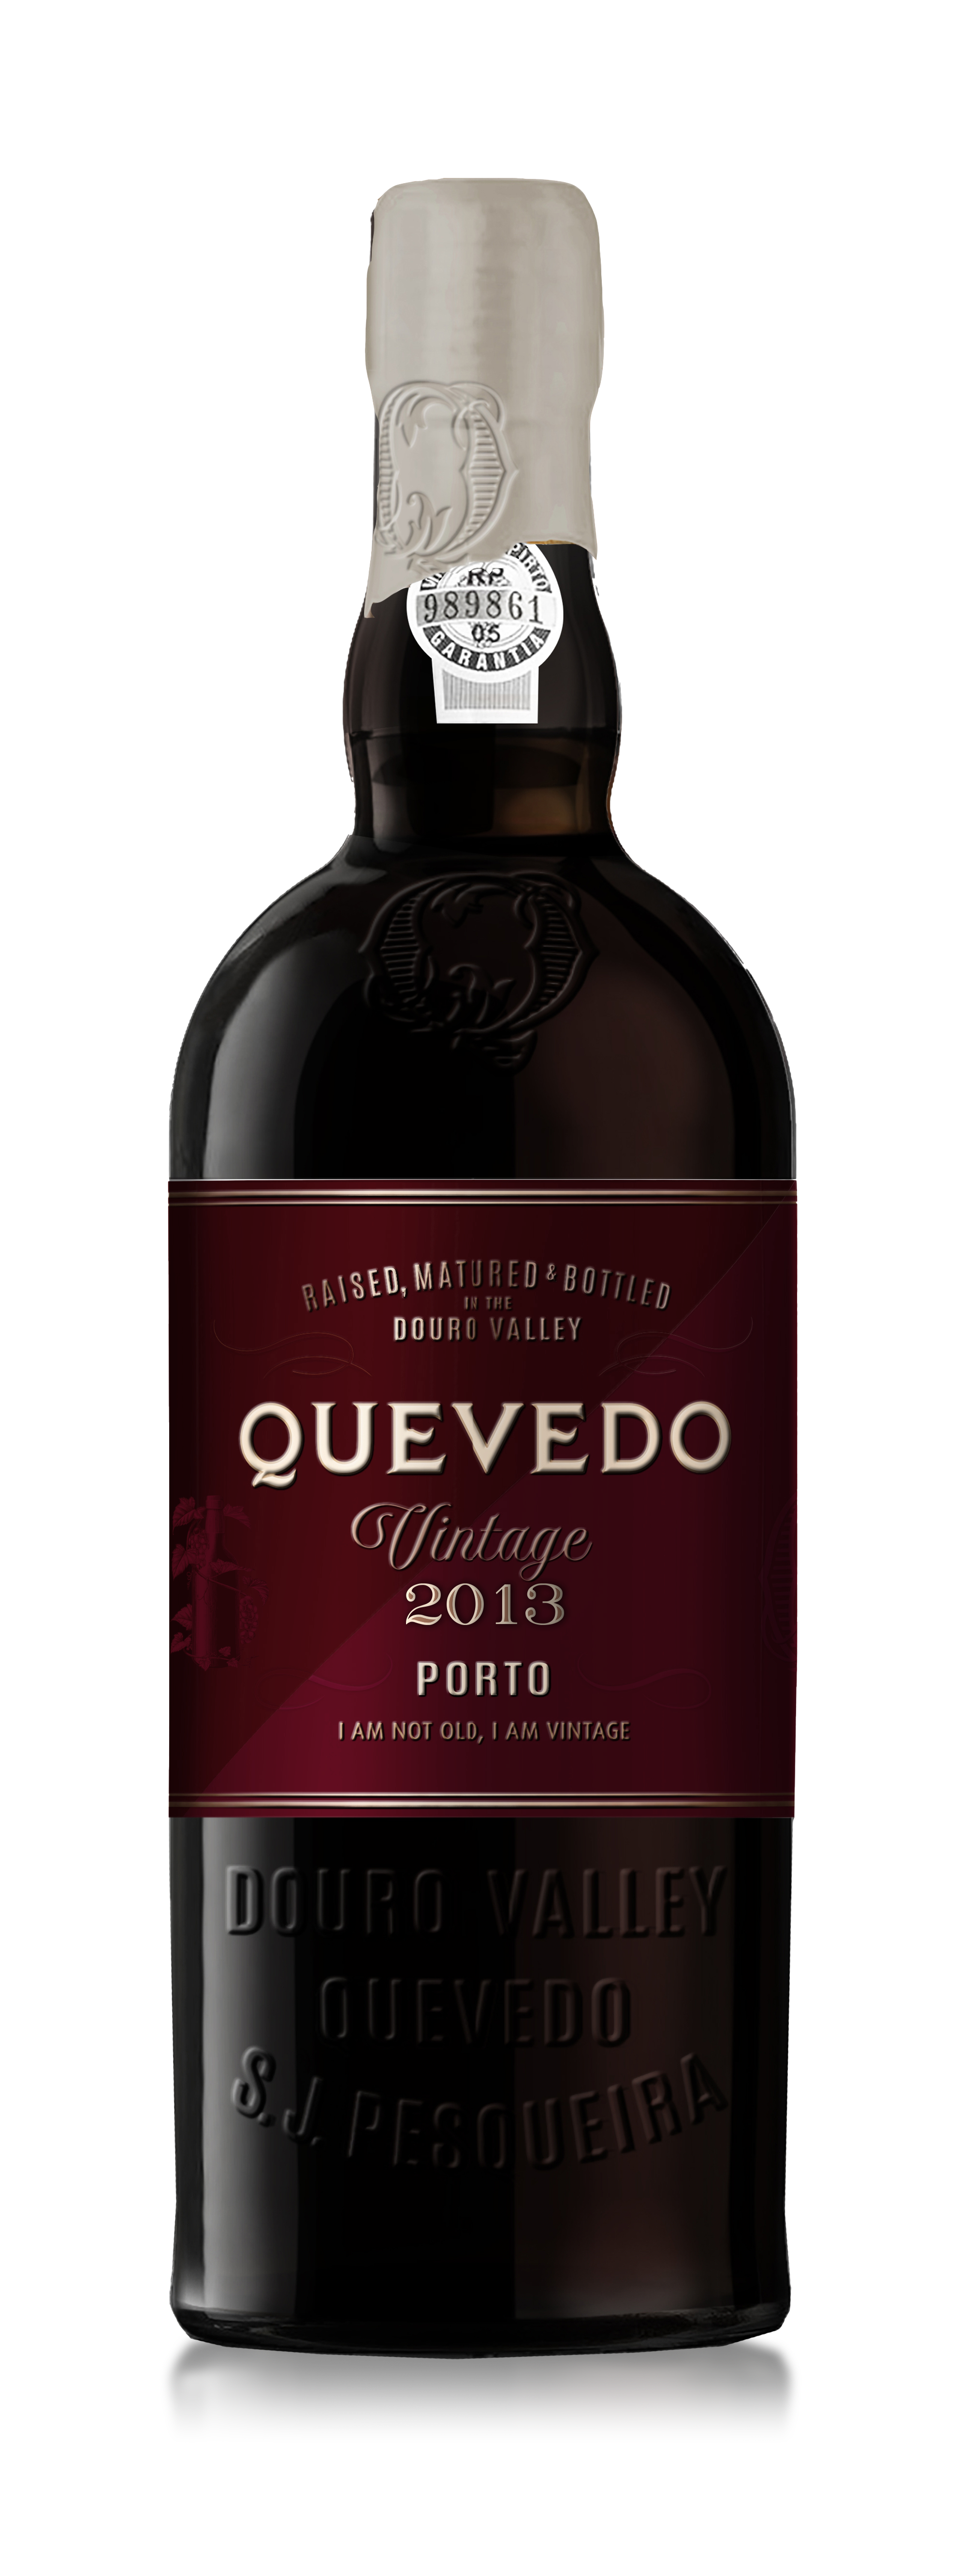 Quevedo Vintage Port 2013 0,375l Flasche 